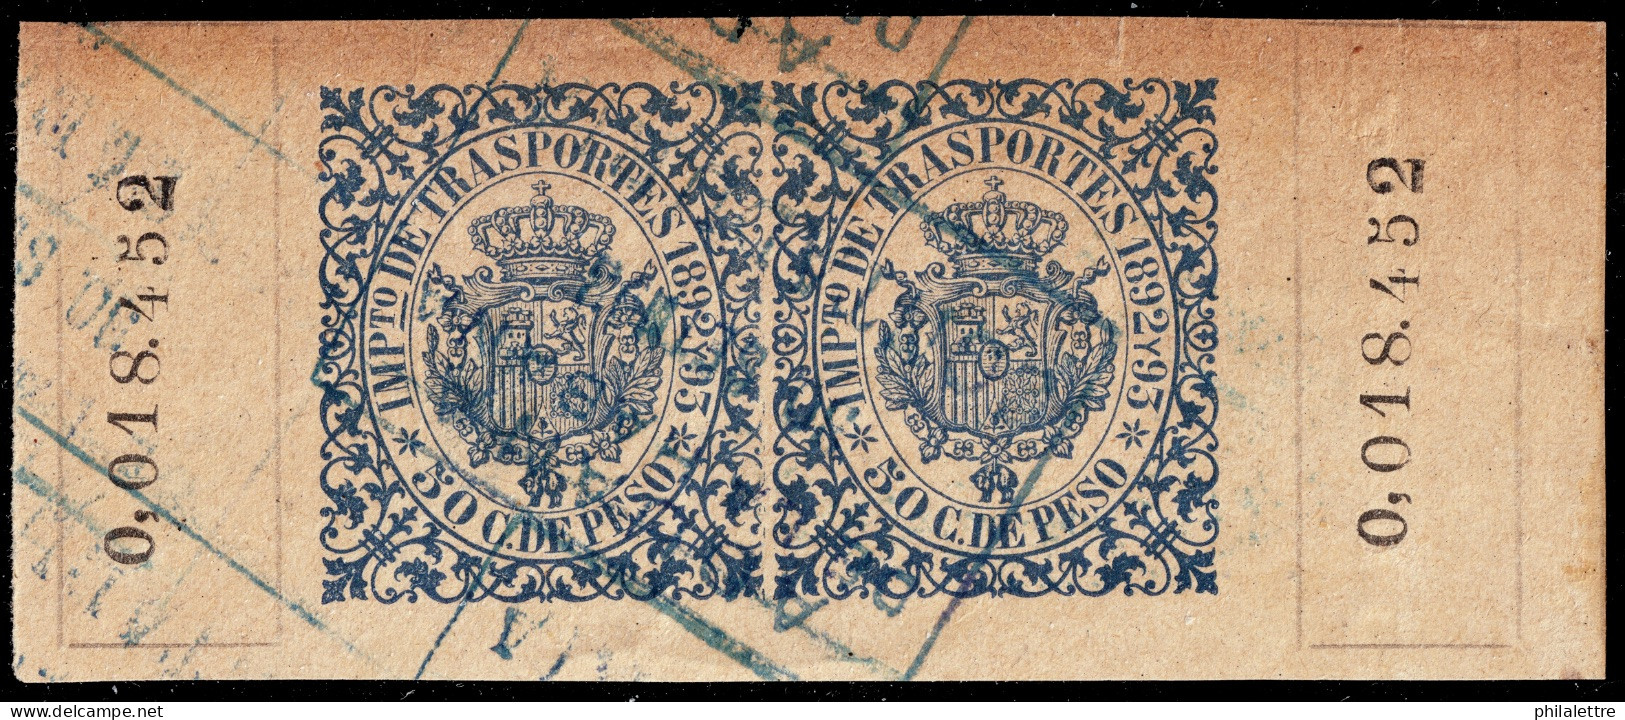 ESPAGNE / ESPANA - COLONIAS (Cuba) 1892/93 "IMPto De TRASPORTES" Fulcher 1366 (?) 2x 50c Azul - Usado (0.018.452) - Cuba (1874-1898)